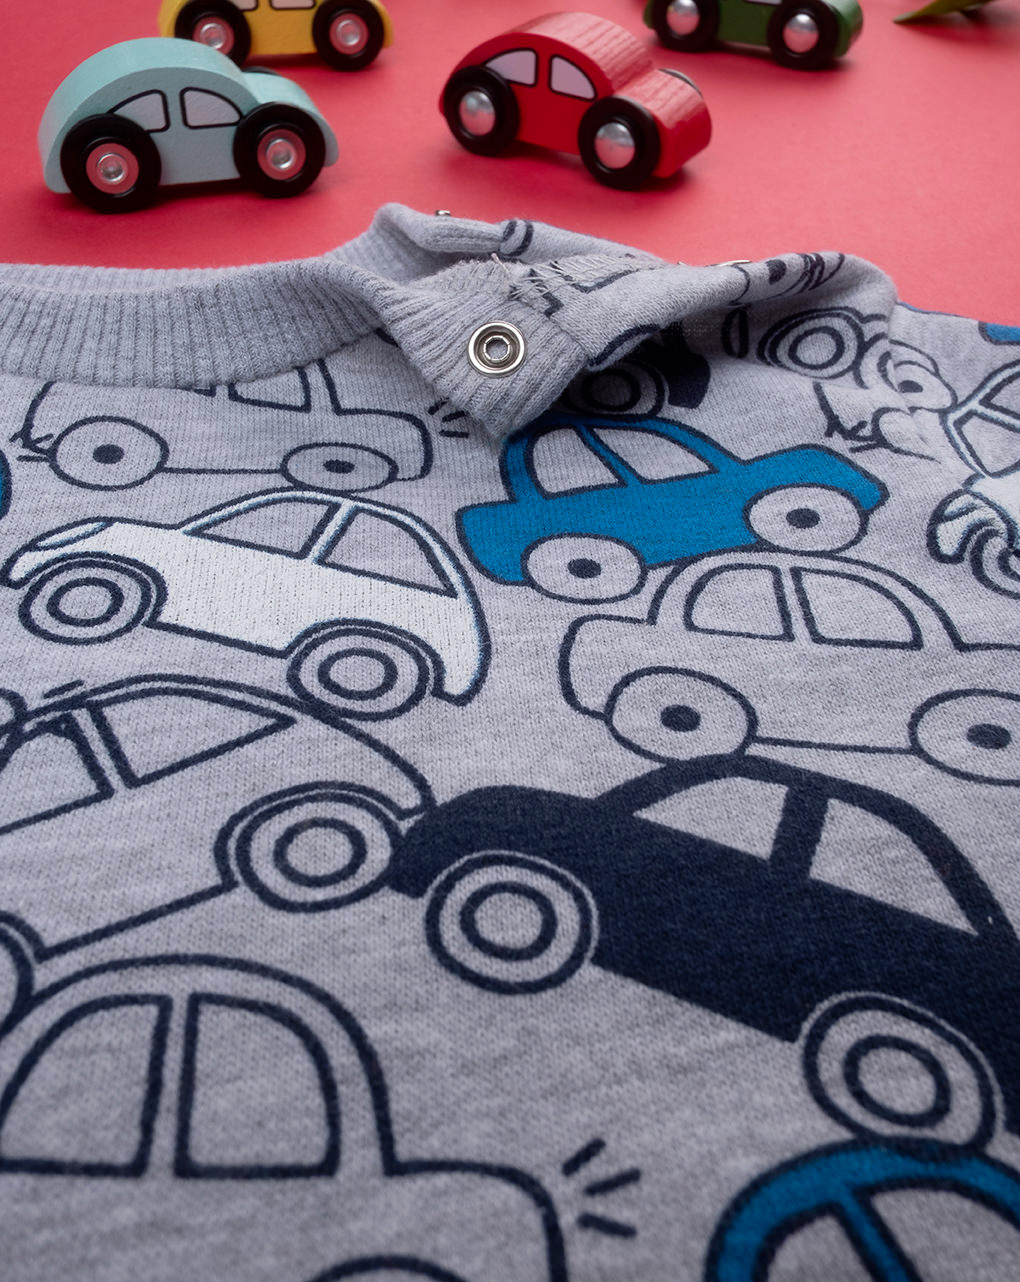 βρεφική μπλούζα φούτερ γκρι με αυτοκινητάκια για αγόρι - Prénatal